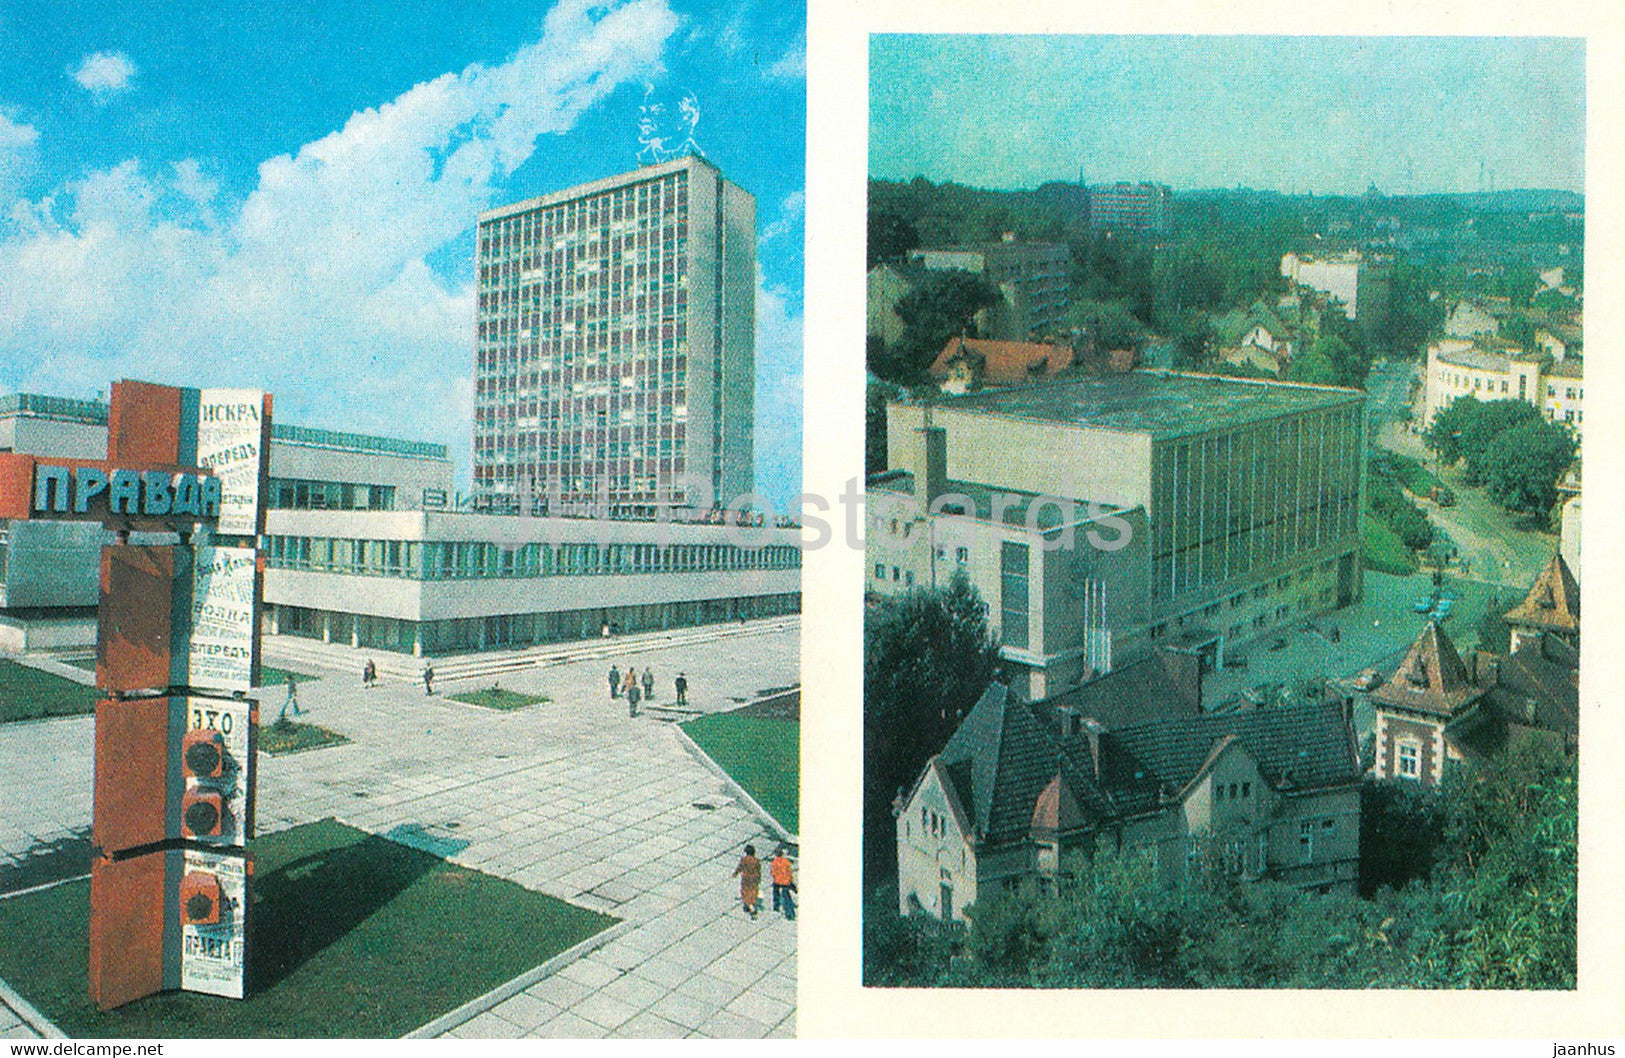 Lviv - Lvov - publishing house Vilna Ukraina - Sports Palace - 1980 - Ukraine USSR - unused - JH Postcards